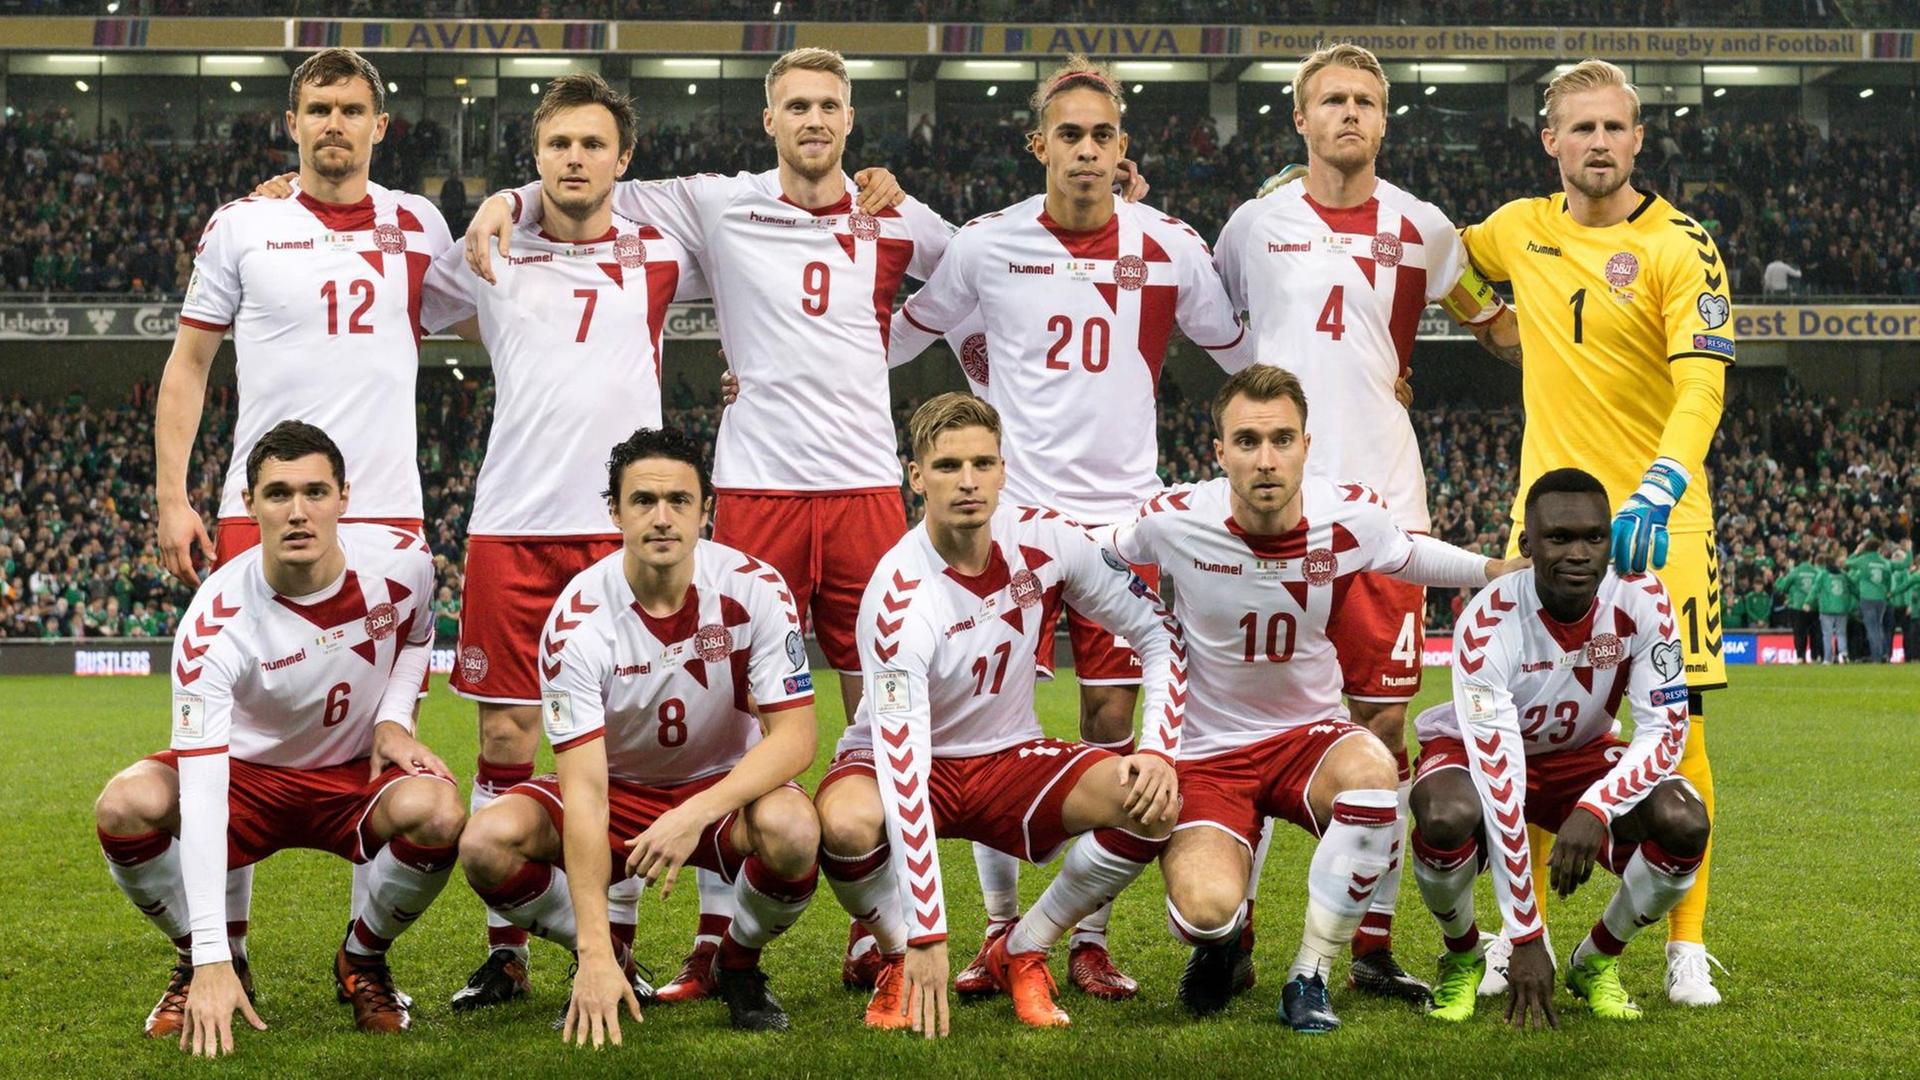 Mannschaftsfoto der dänischen Fußballnationalmannschaft im Stadion.